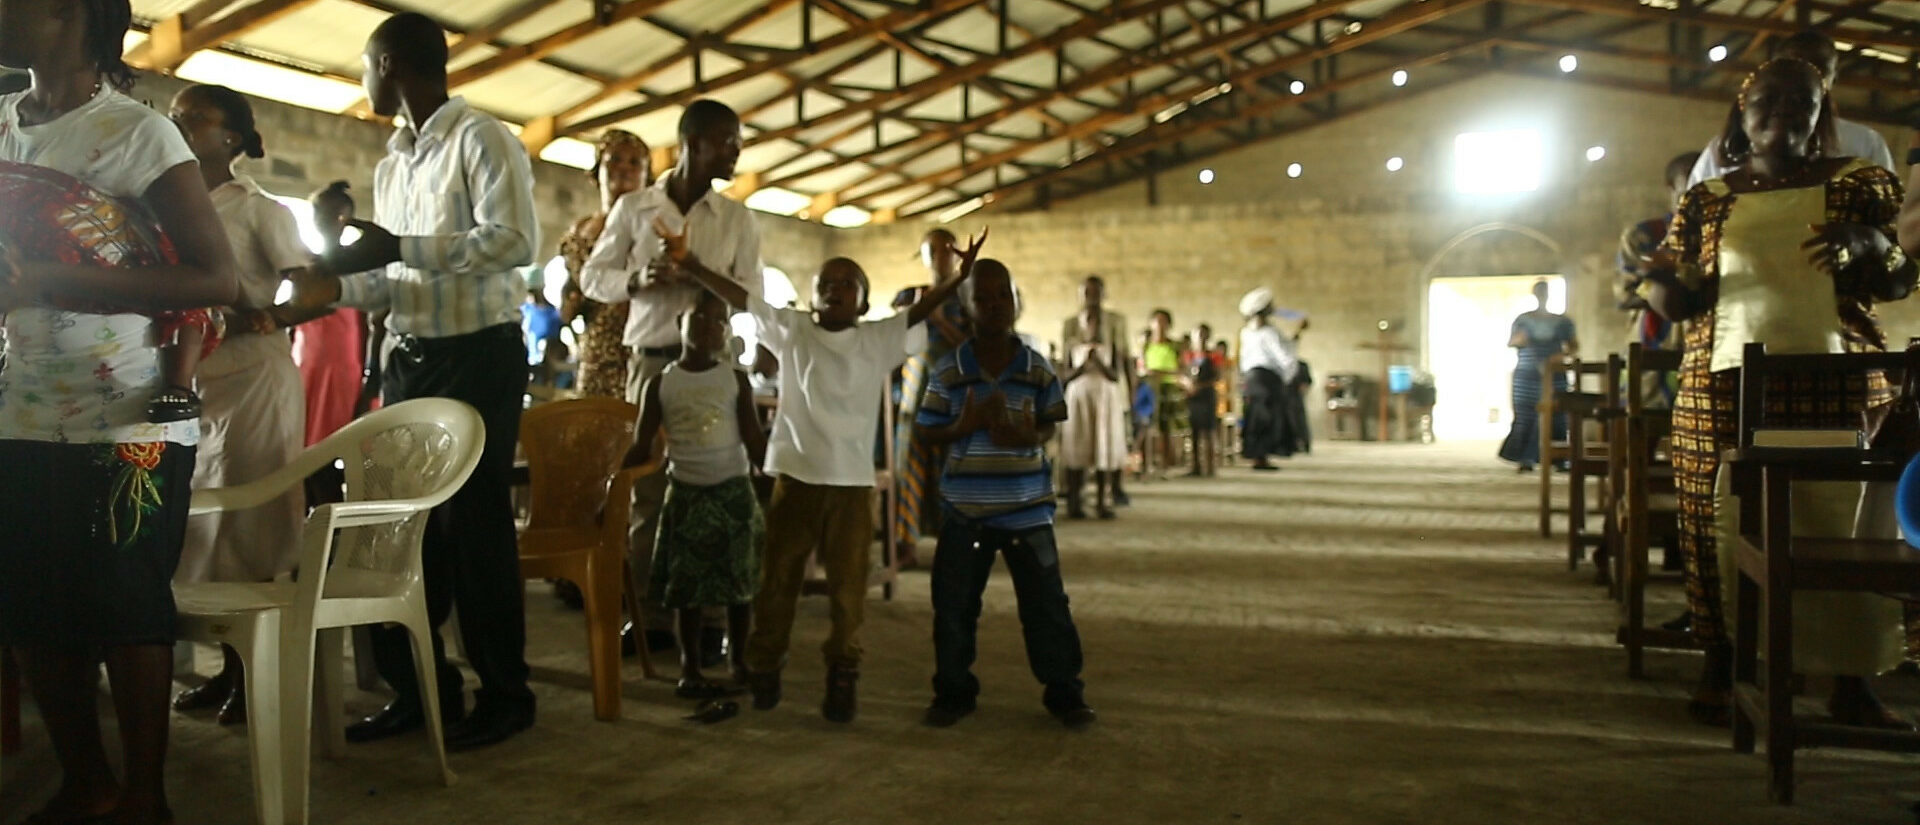 Les Eglises chrétiennes du Liberia cherchent encore leur modalité d'unification | photo d'illustration © #ISurvived Ebola/Flickr/CC BY 2.0